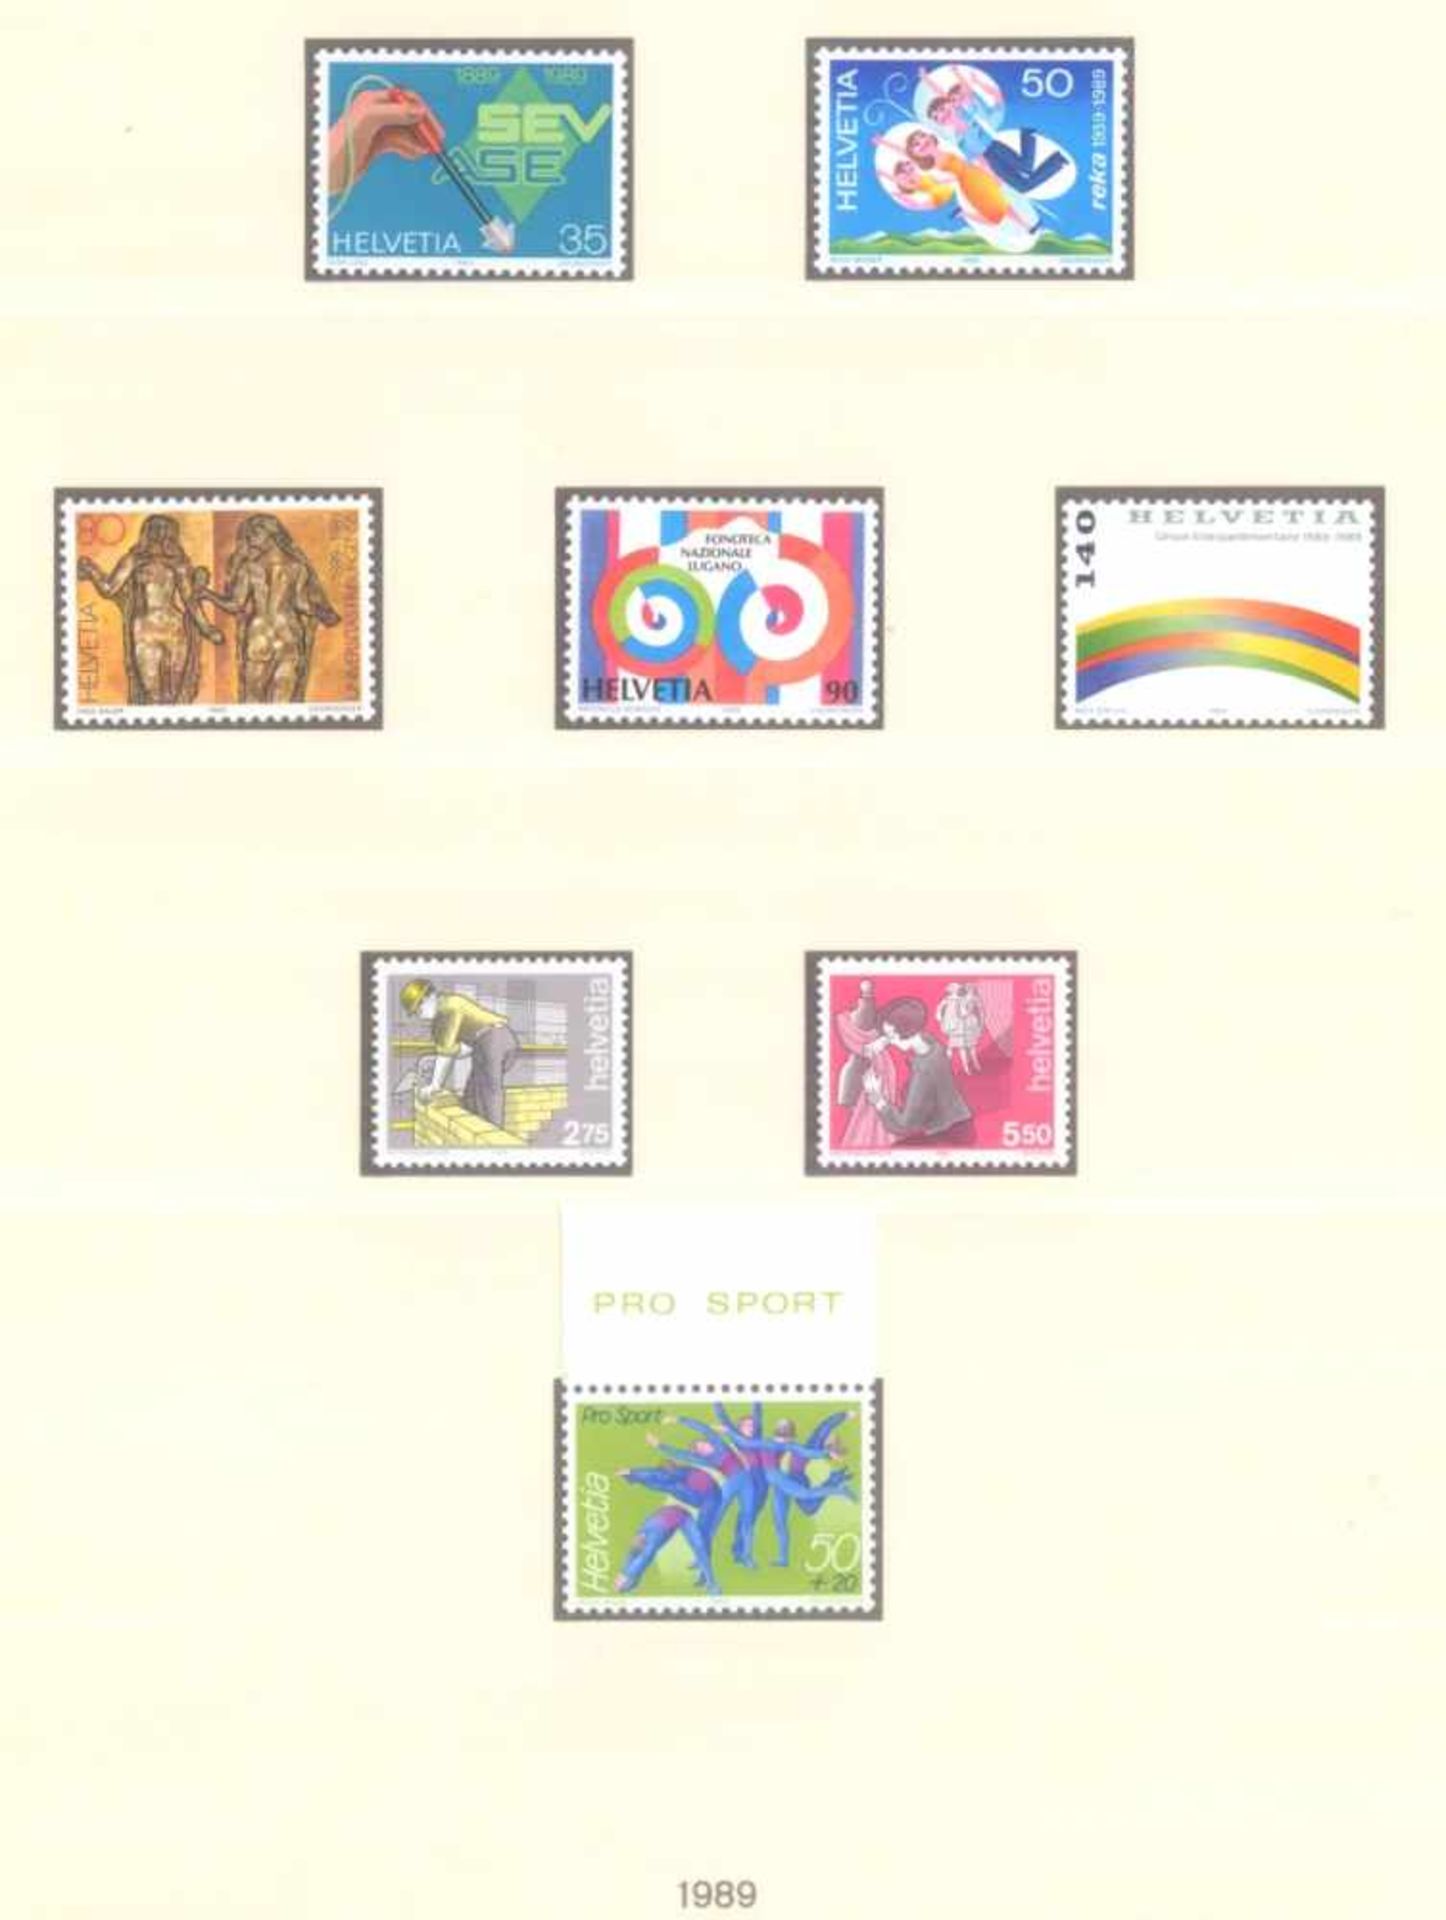 SCHWEIZ 1979-1990; mit 248,- SCHWEIZER FRANKEN NOMINALE!postfrische, komplette Sammlung - nach den - Bild 5 aus 6